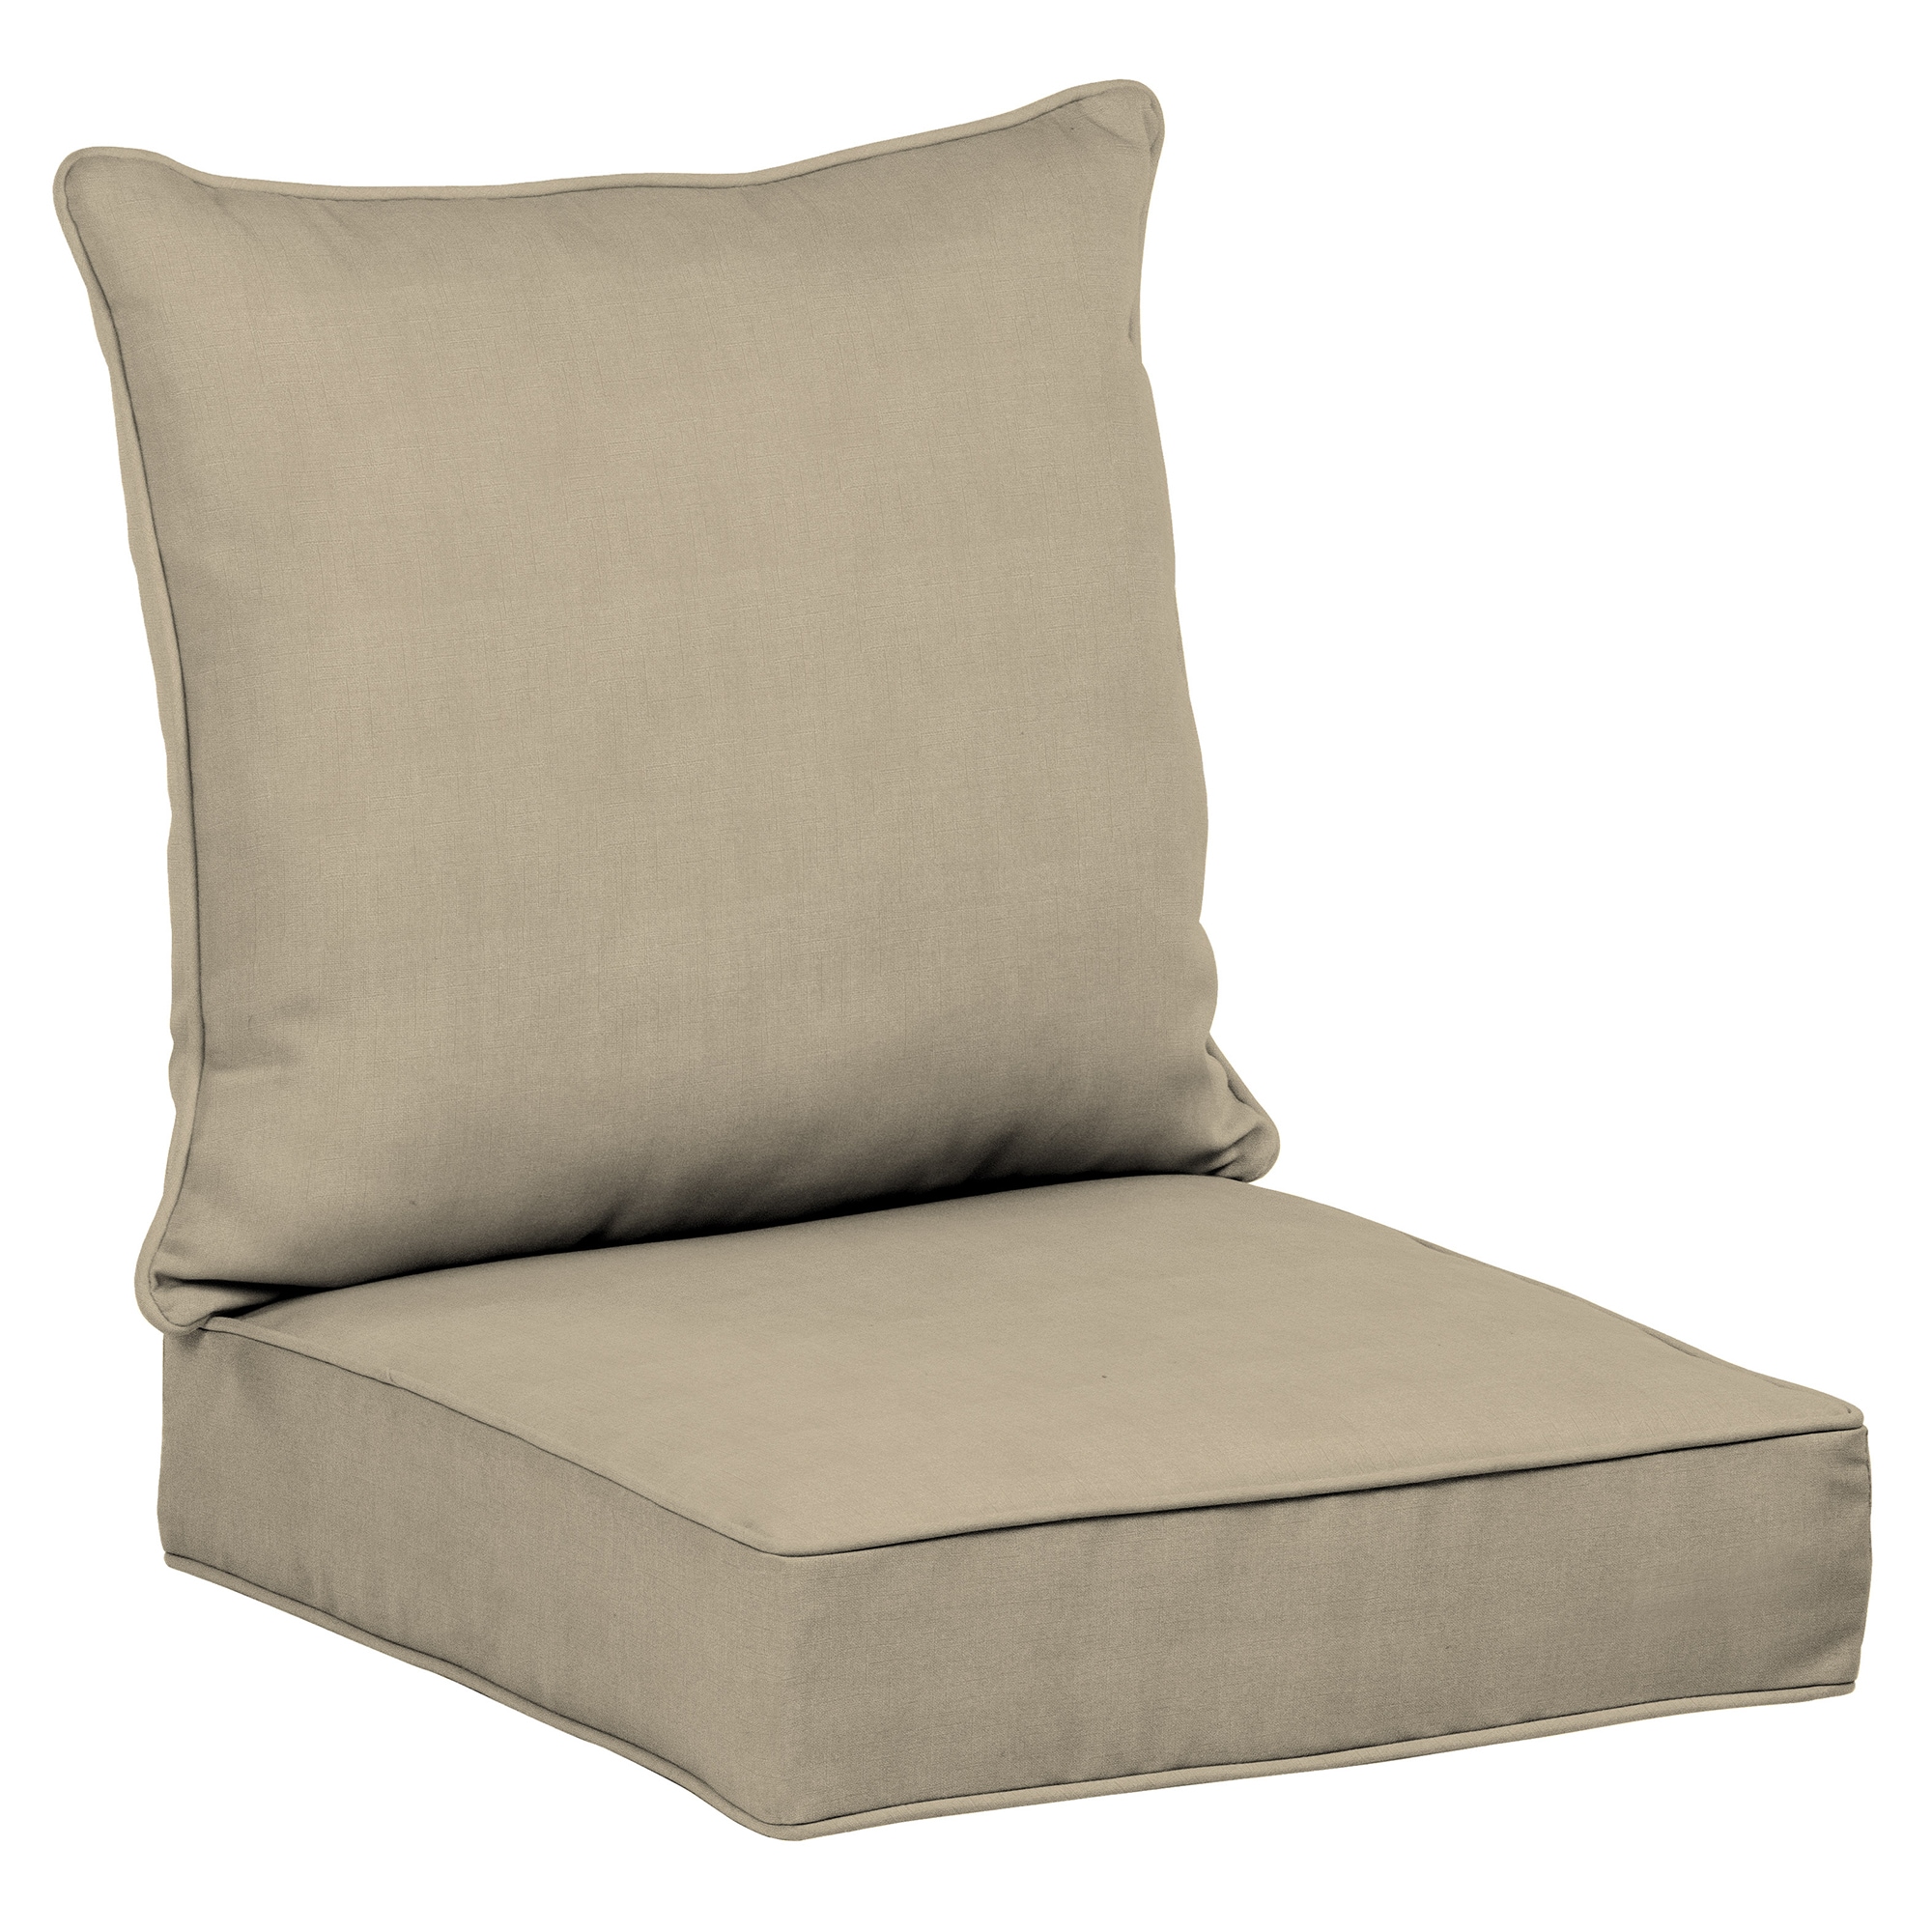 Garden Furniture Cushion Cushion for 2 Seater Metal Garden Bench Light Grey 